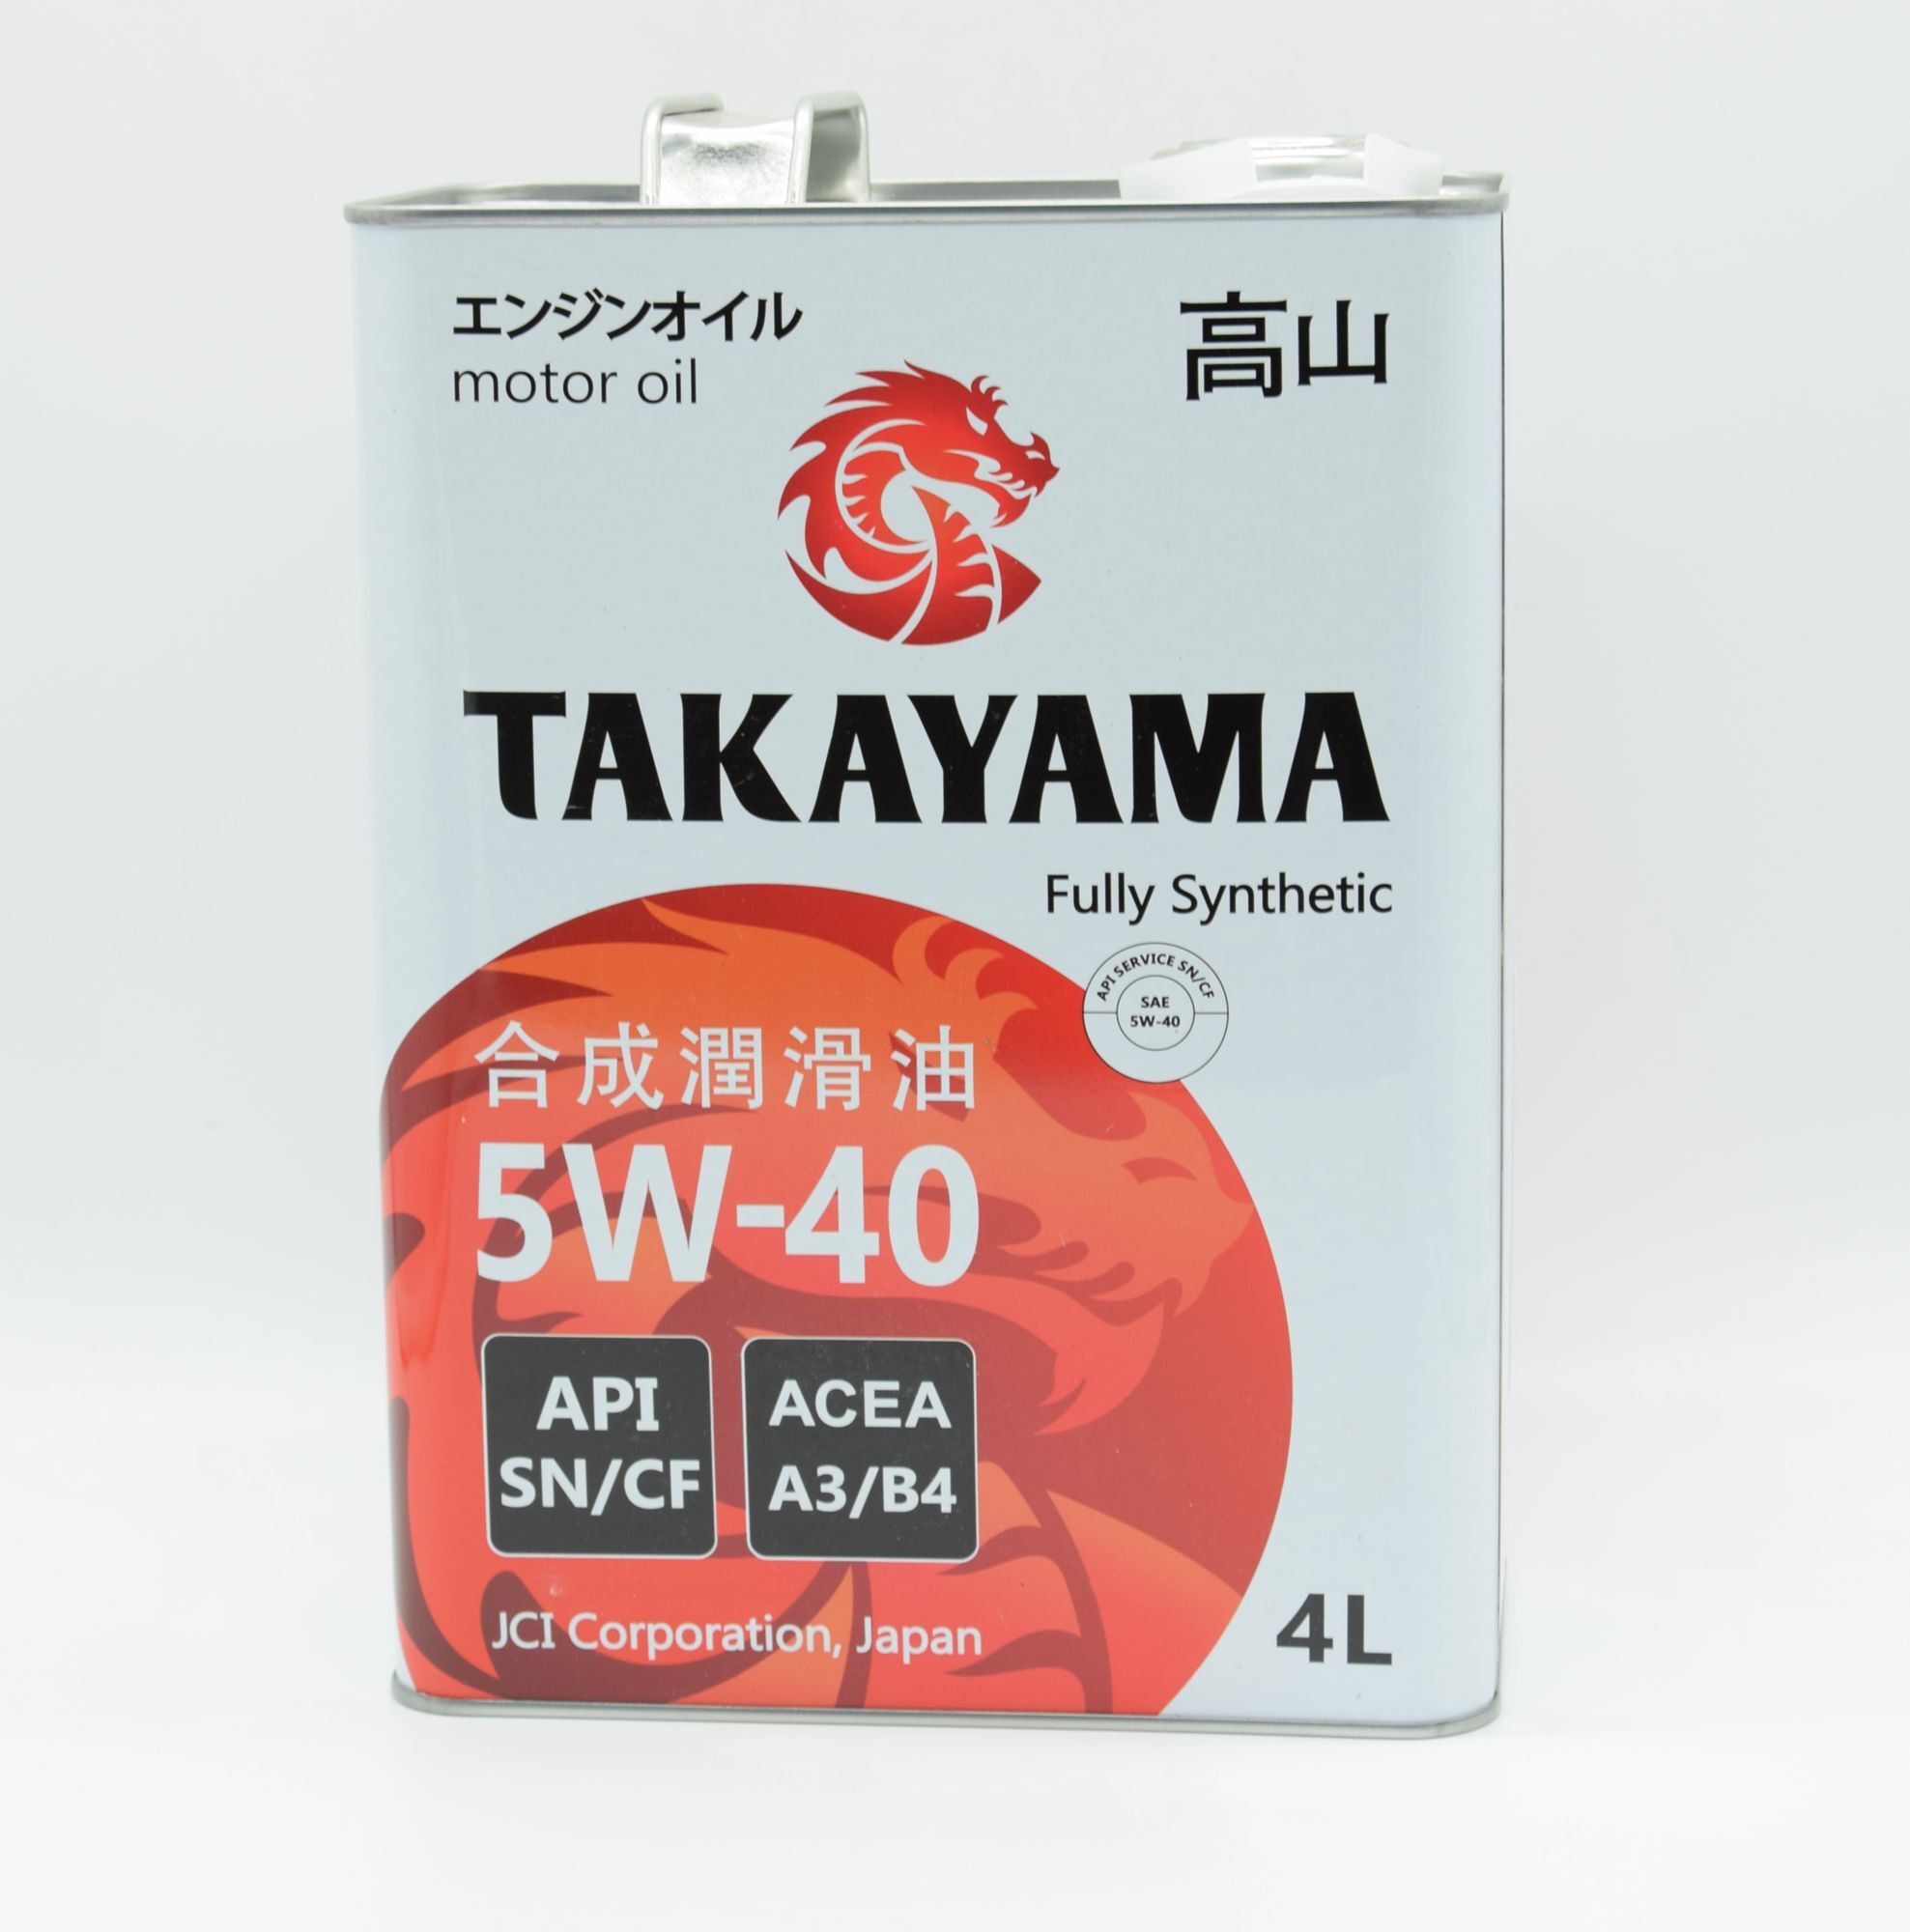 Отзывы о масле такаяма. Моторное масло Takayama engine Oil SAE API SN/CF fully Synthetic 5w-40 синтетическое. Масло моторное 5w40 синтетика Такаяма отзывы покупателей. 4g69 SAE API. Масло моторное 5w40 синтетика Такаяма отзывы цена.